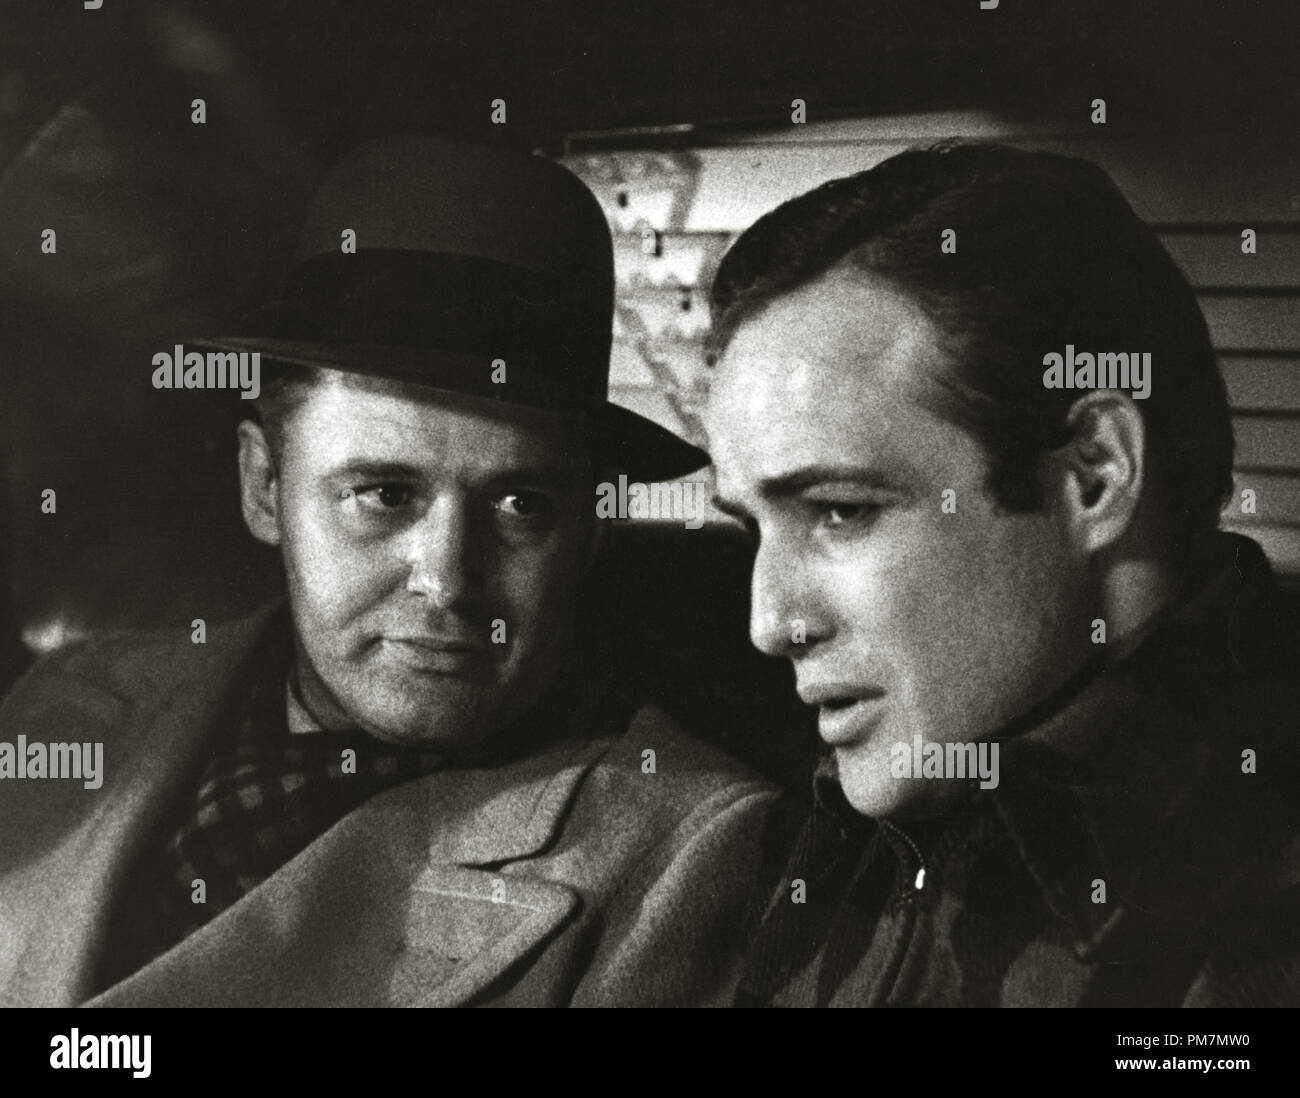 Rod Steiger und Marlon Brando, "Am Wasser" 1954 Datei Referenz # 31202 512 THA Stockfoto